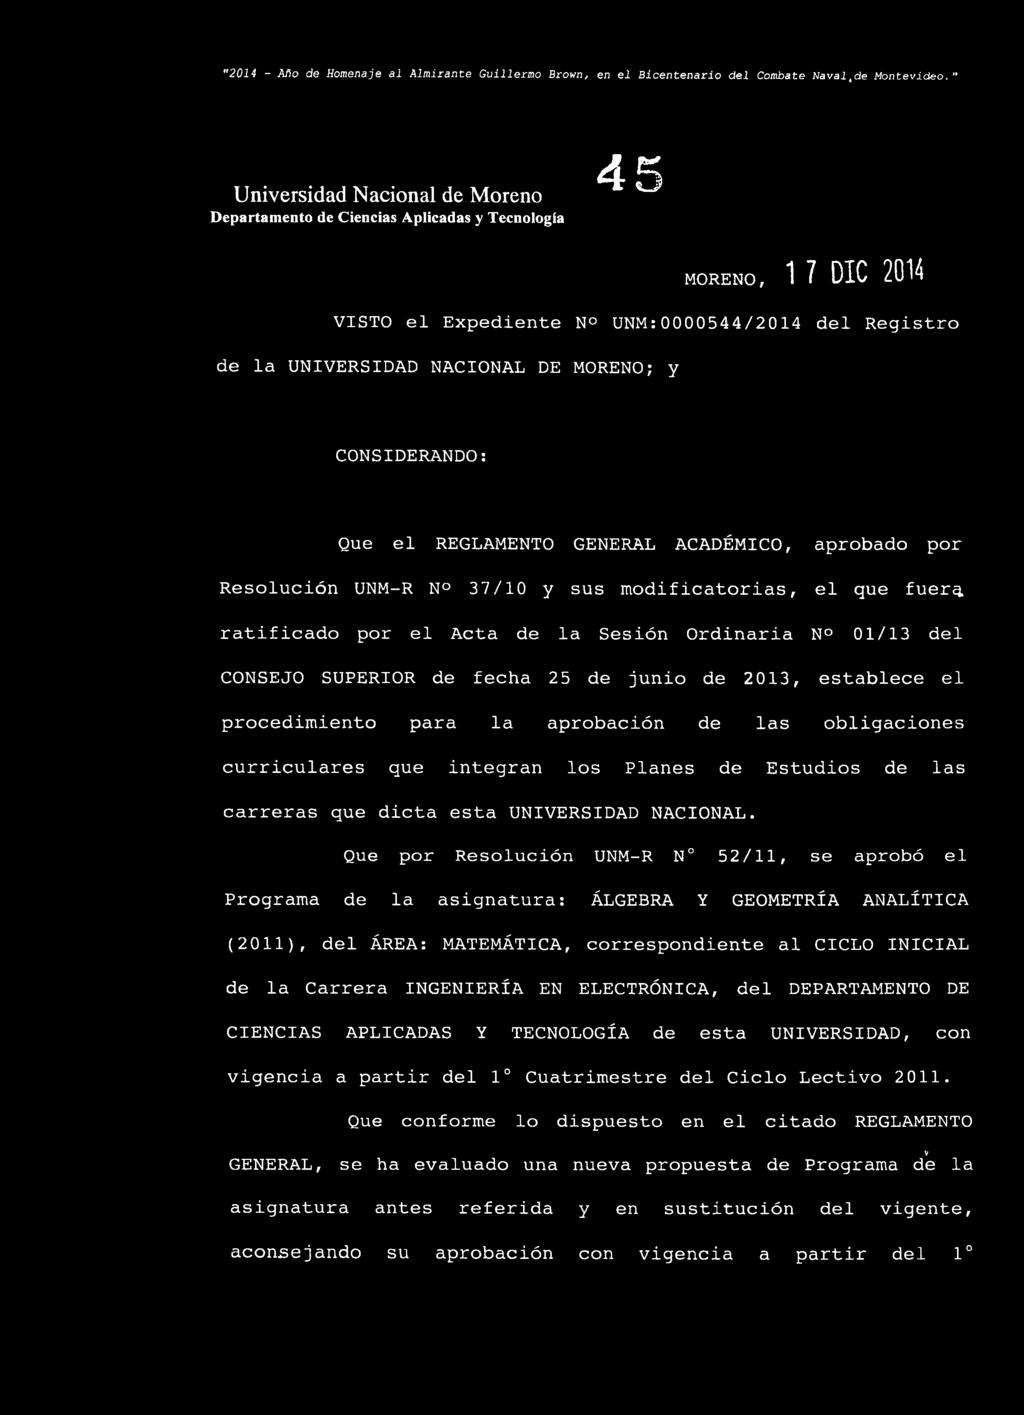 GENERAL ACADÉMICO, aprobado por Resolución UNM-R N 37/10 y sus modificatorias, el que fuer^ ratificado por el Acta de la Sesión Ordinaria N 01/13 del CONSEJO SUPERIOR de fecha 25 de junio de 2013,